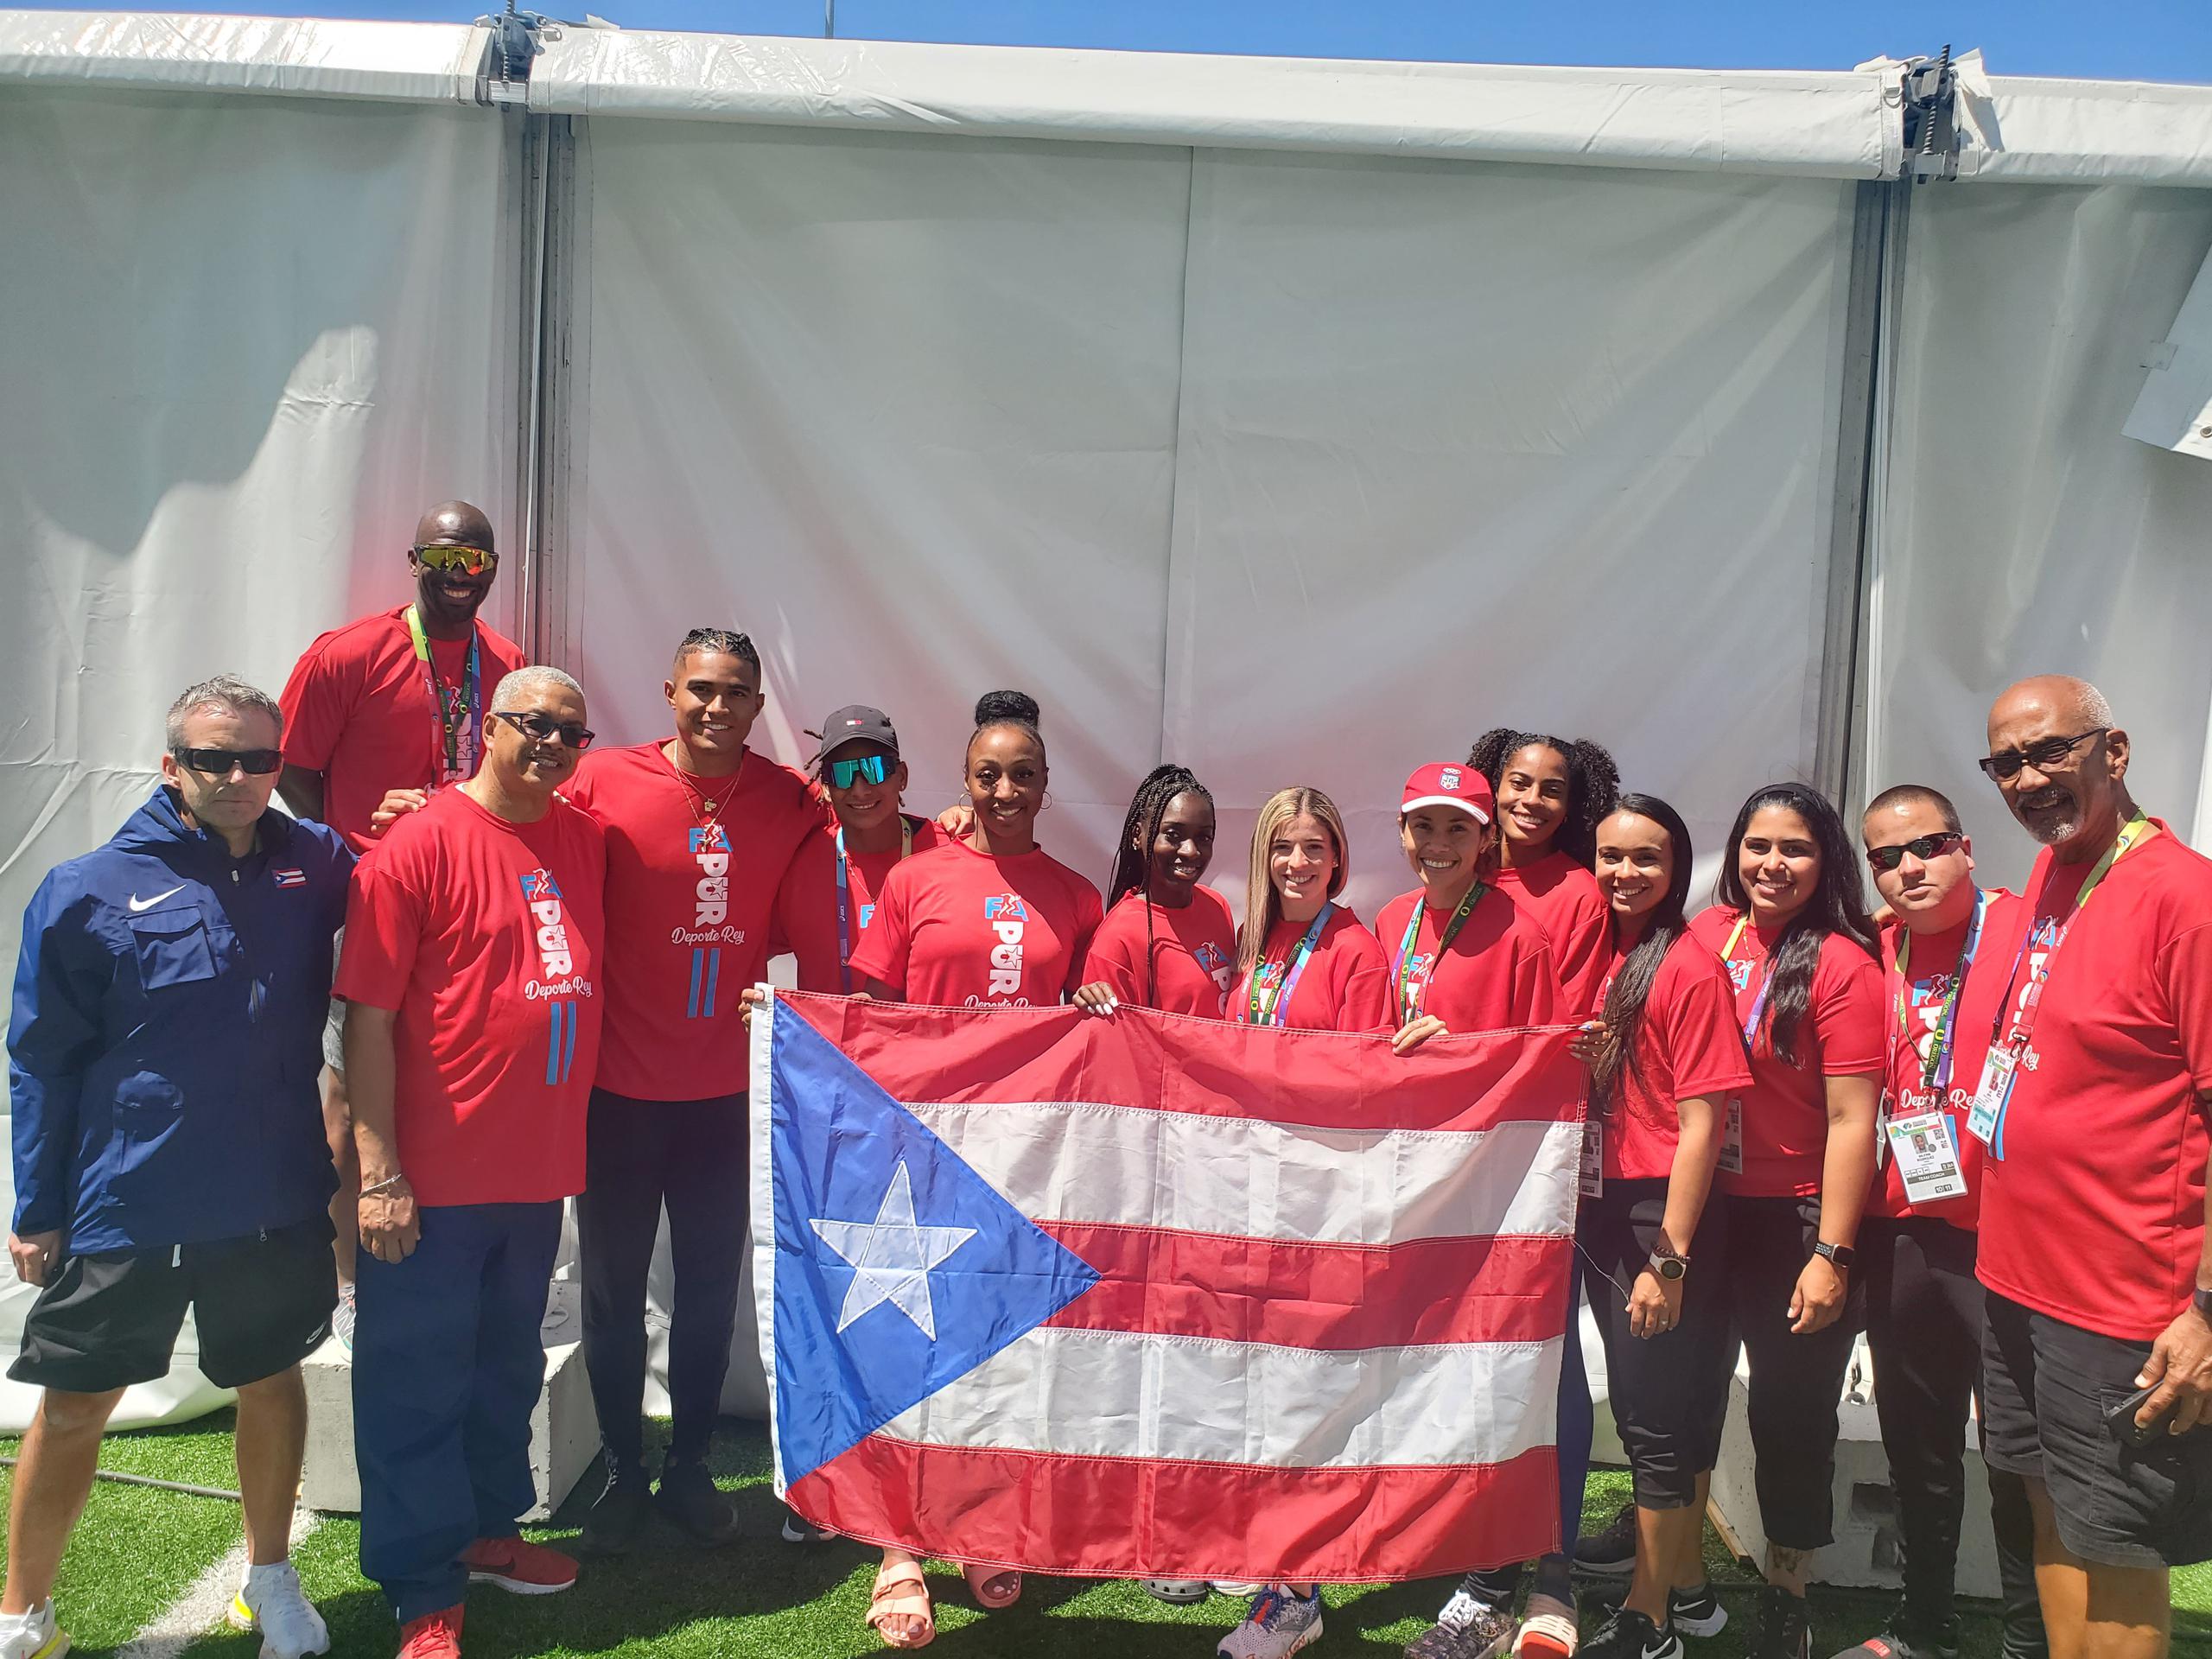 La delegación de Puerto Rico, incluyendo a la campeona olímpica Jasmine Camacho-Quinn, posa con la bandera boricua.